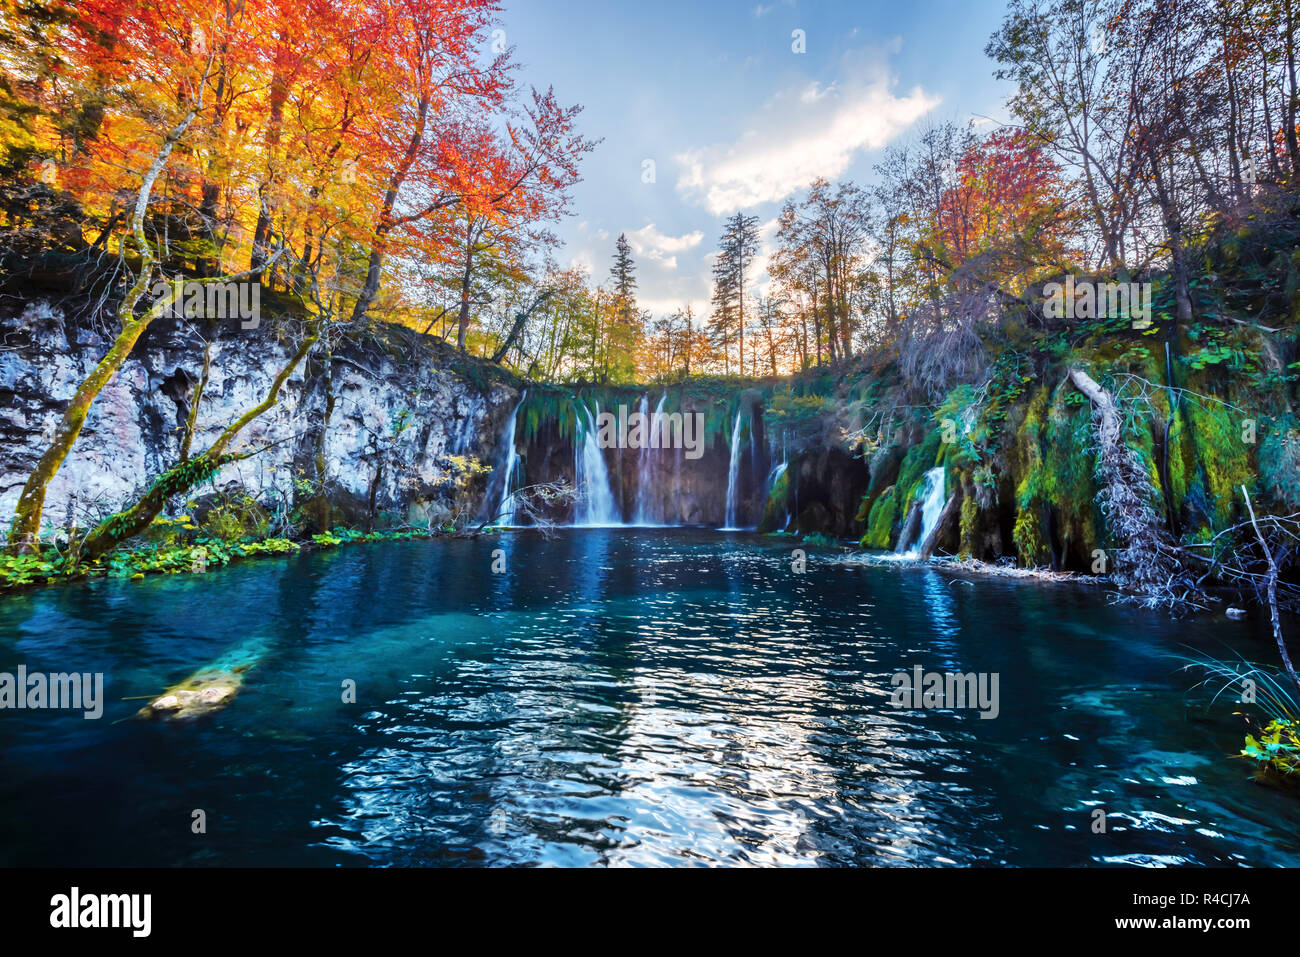 Erstaunliche Wasserfall mit reinen blauen Wasser der Plitvicer Seen. Orange Herbst Wald für den Hintergrund. Nationalpark Plitvice, Kroatien. Landschaftsfotografie Stockfoto